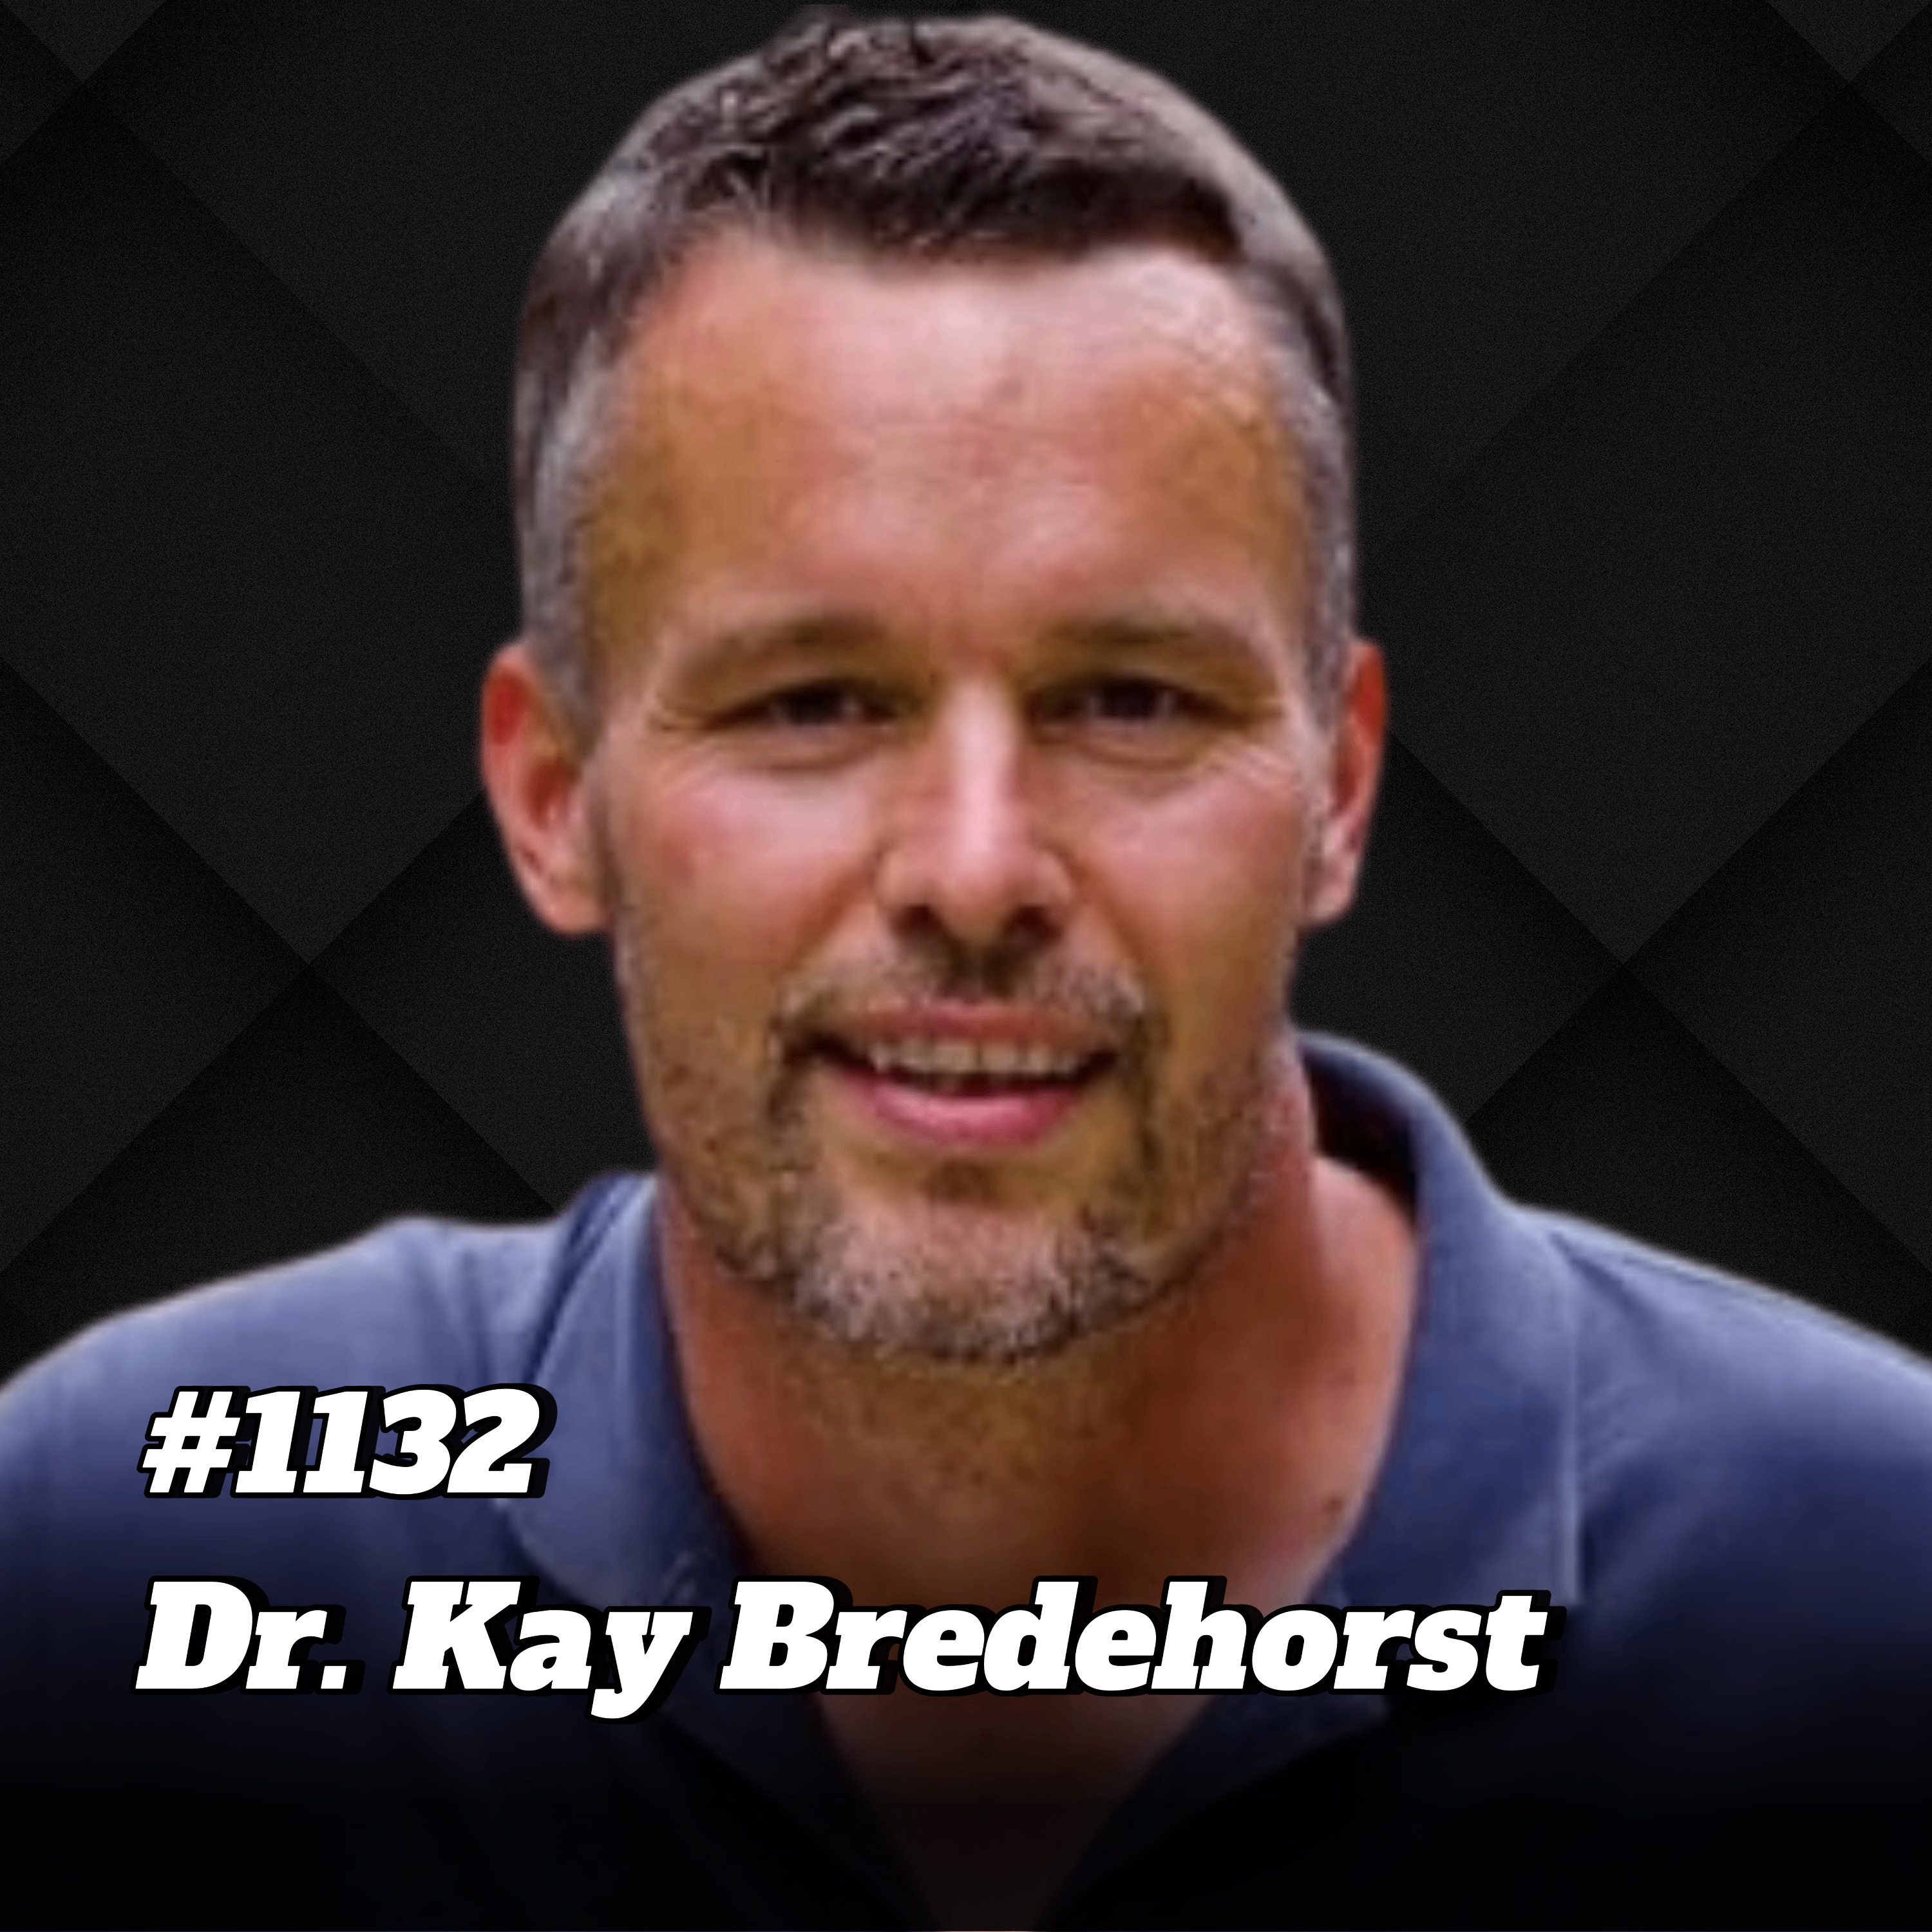 DAS ist der wichtigste STOFF in LEBENSMITTELN (Nicht Protein, Fett & Carbs) I Dr. Kay Bredehorst #1132